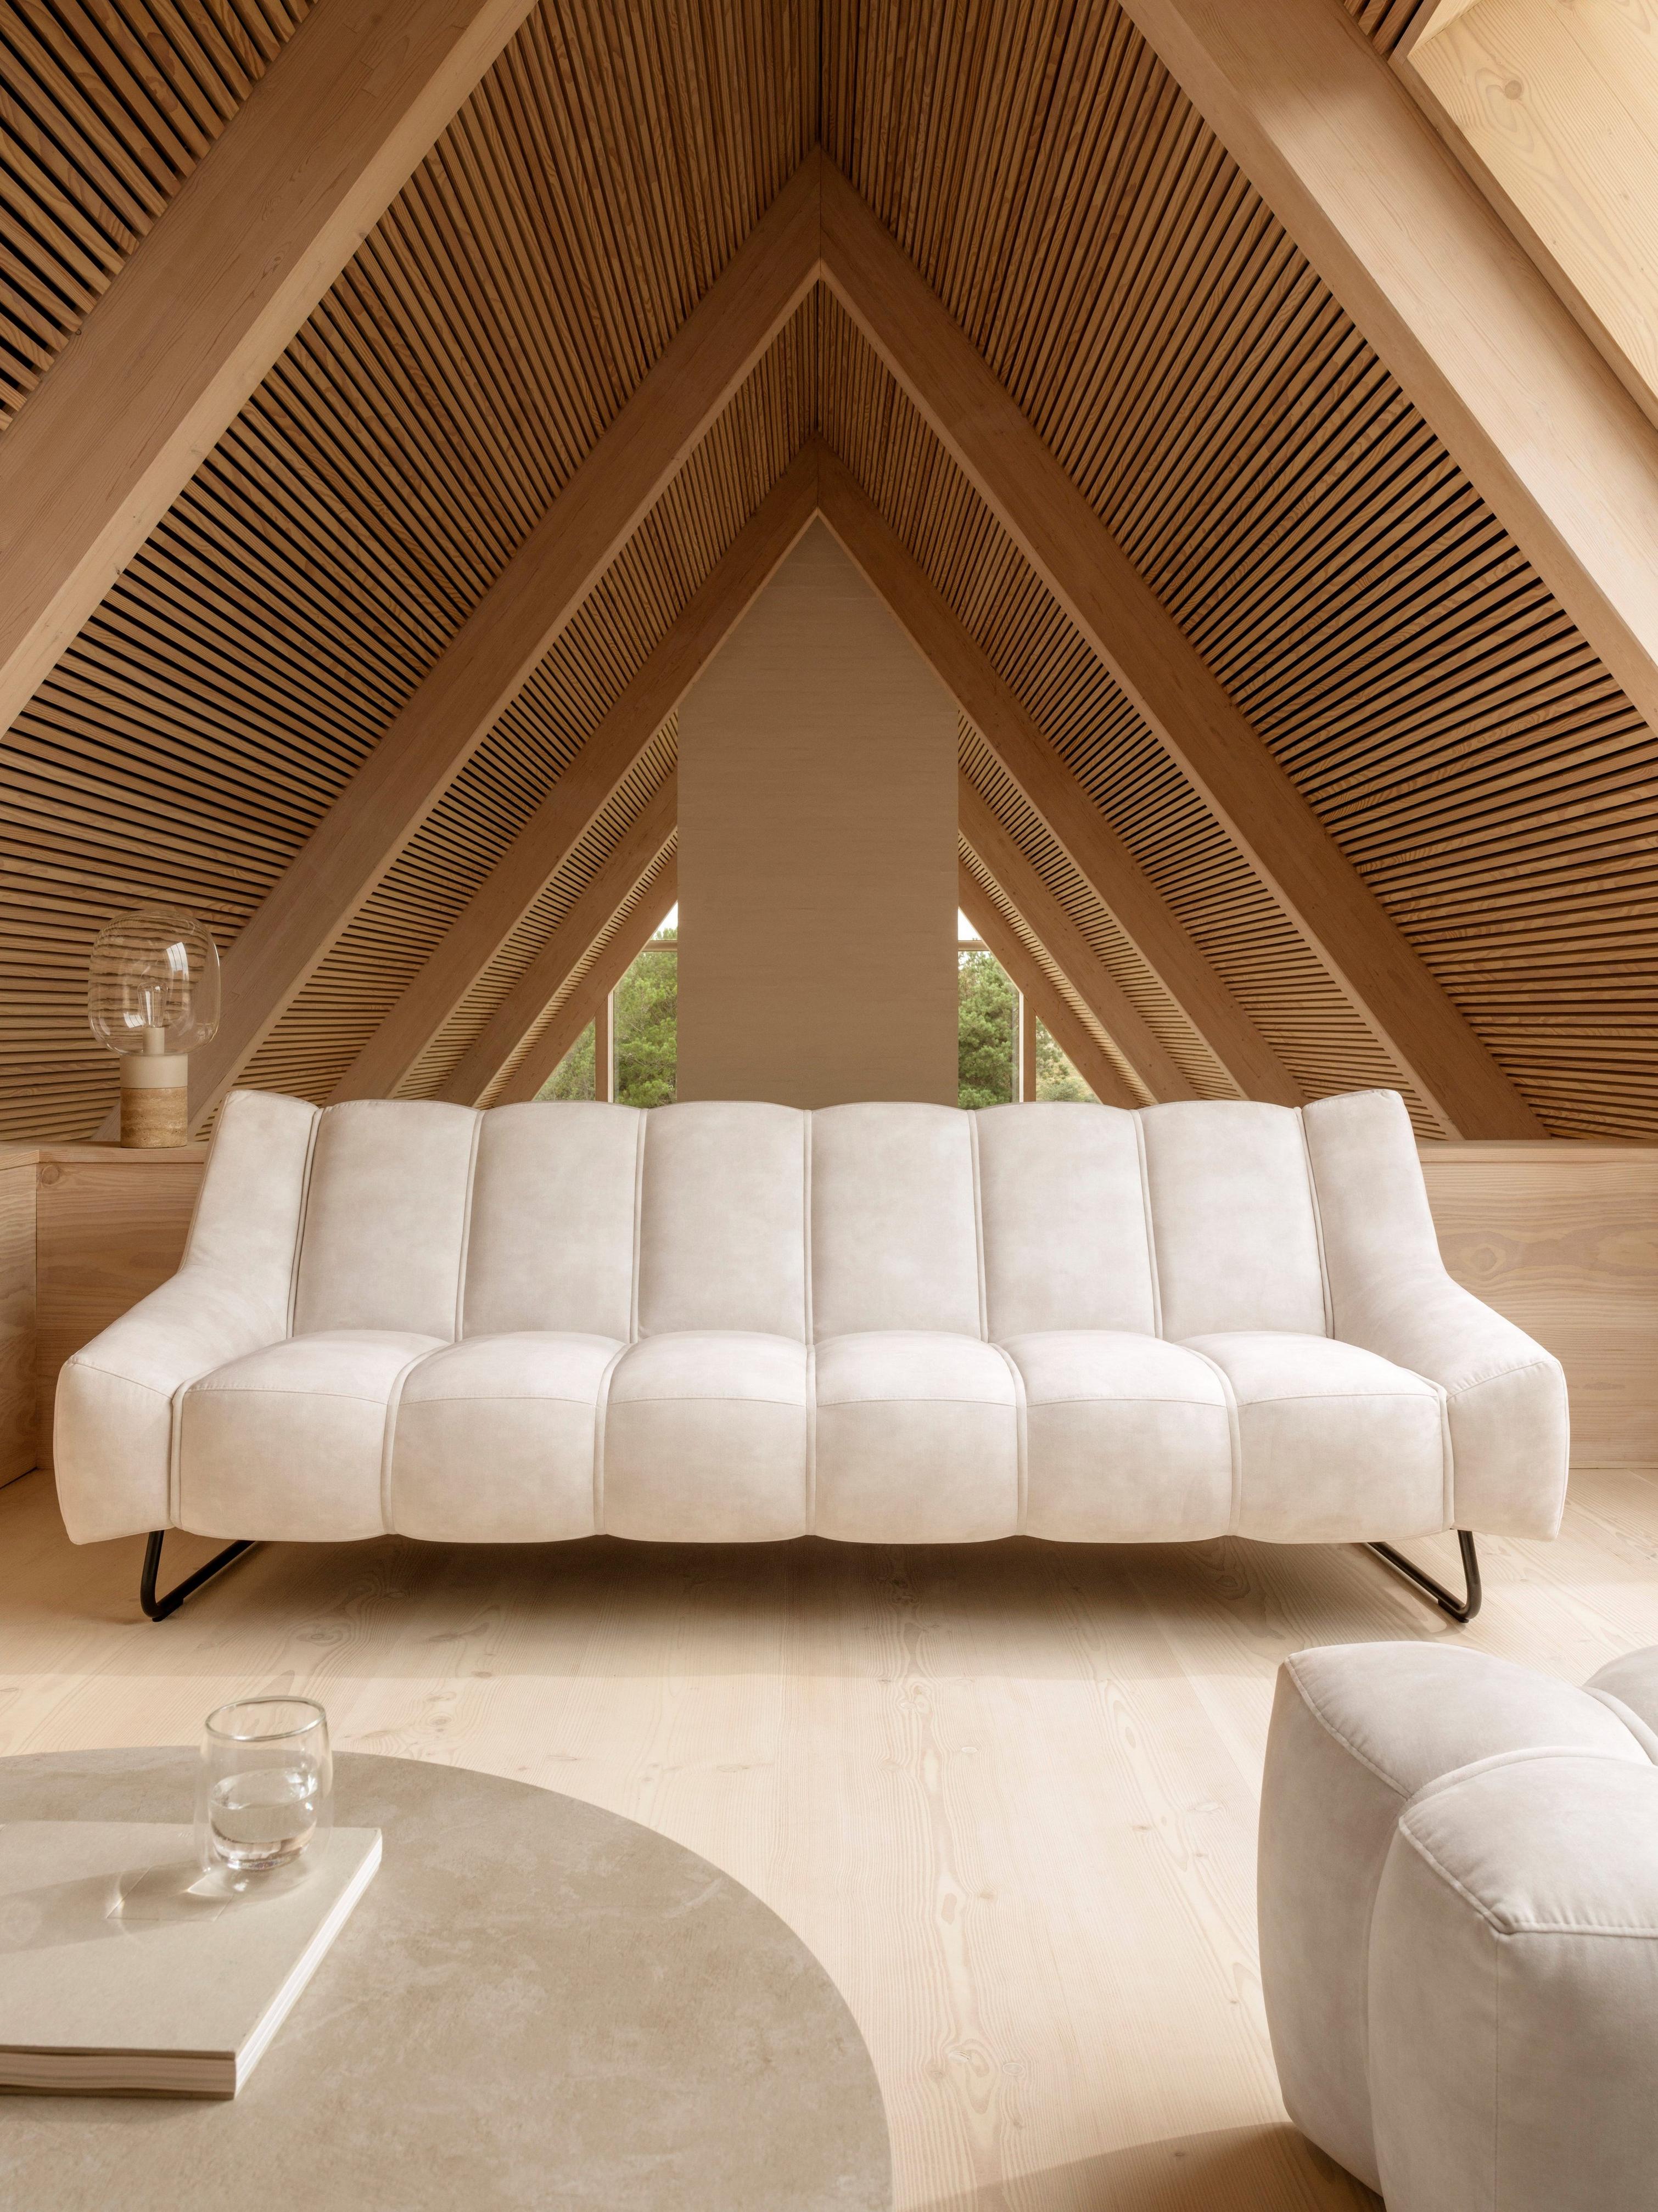 三角形の天井を持つニュートラルなリビングルームに、ベージュのRavello ファブリックを使った3人掛けのNawabari ソファを配置したスタイリング。